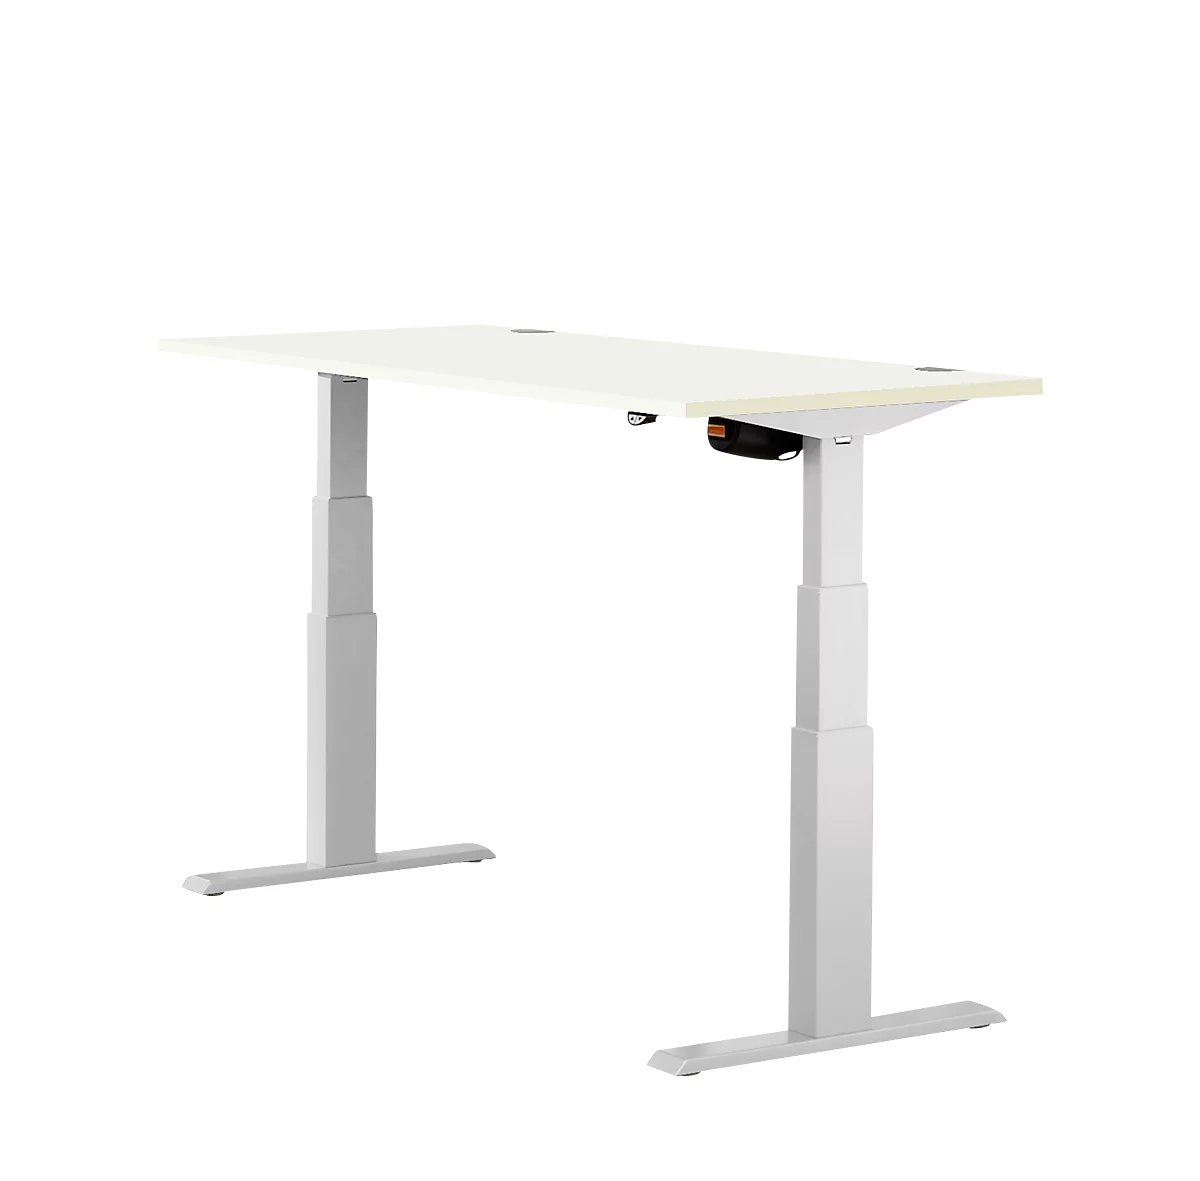 Schäfer Shop Select ERGO-T escritorio, regulable eléctricamente en altura, rectangular, pie en T, An 1200 x Pr 800 x Al 640-1300 mm, aluminio blanco/blanco